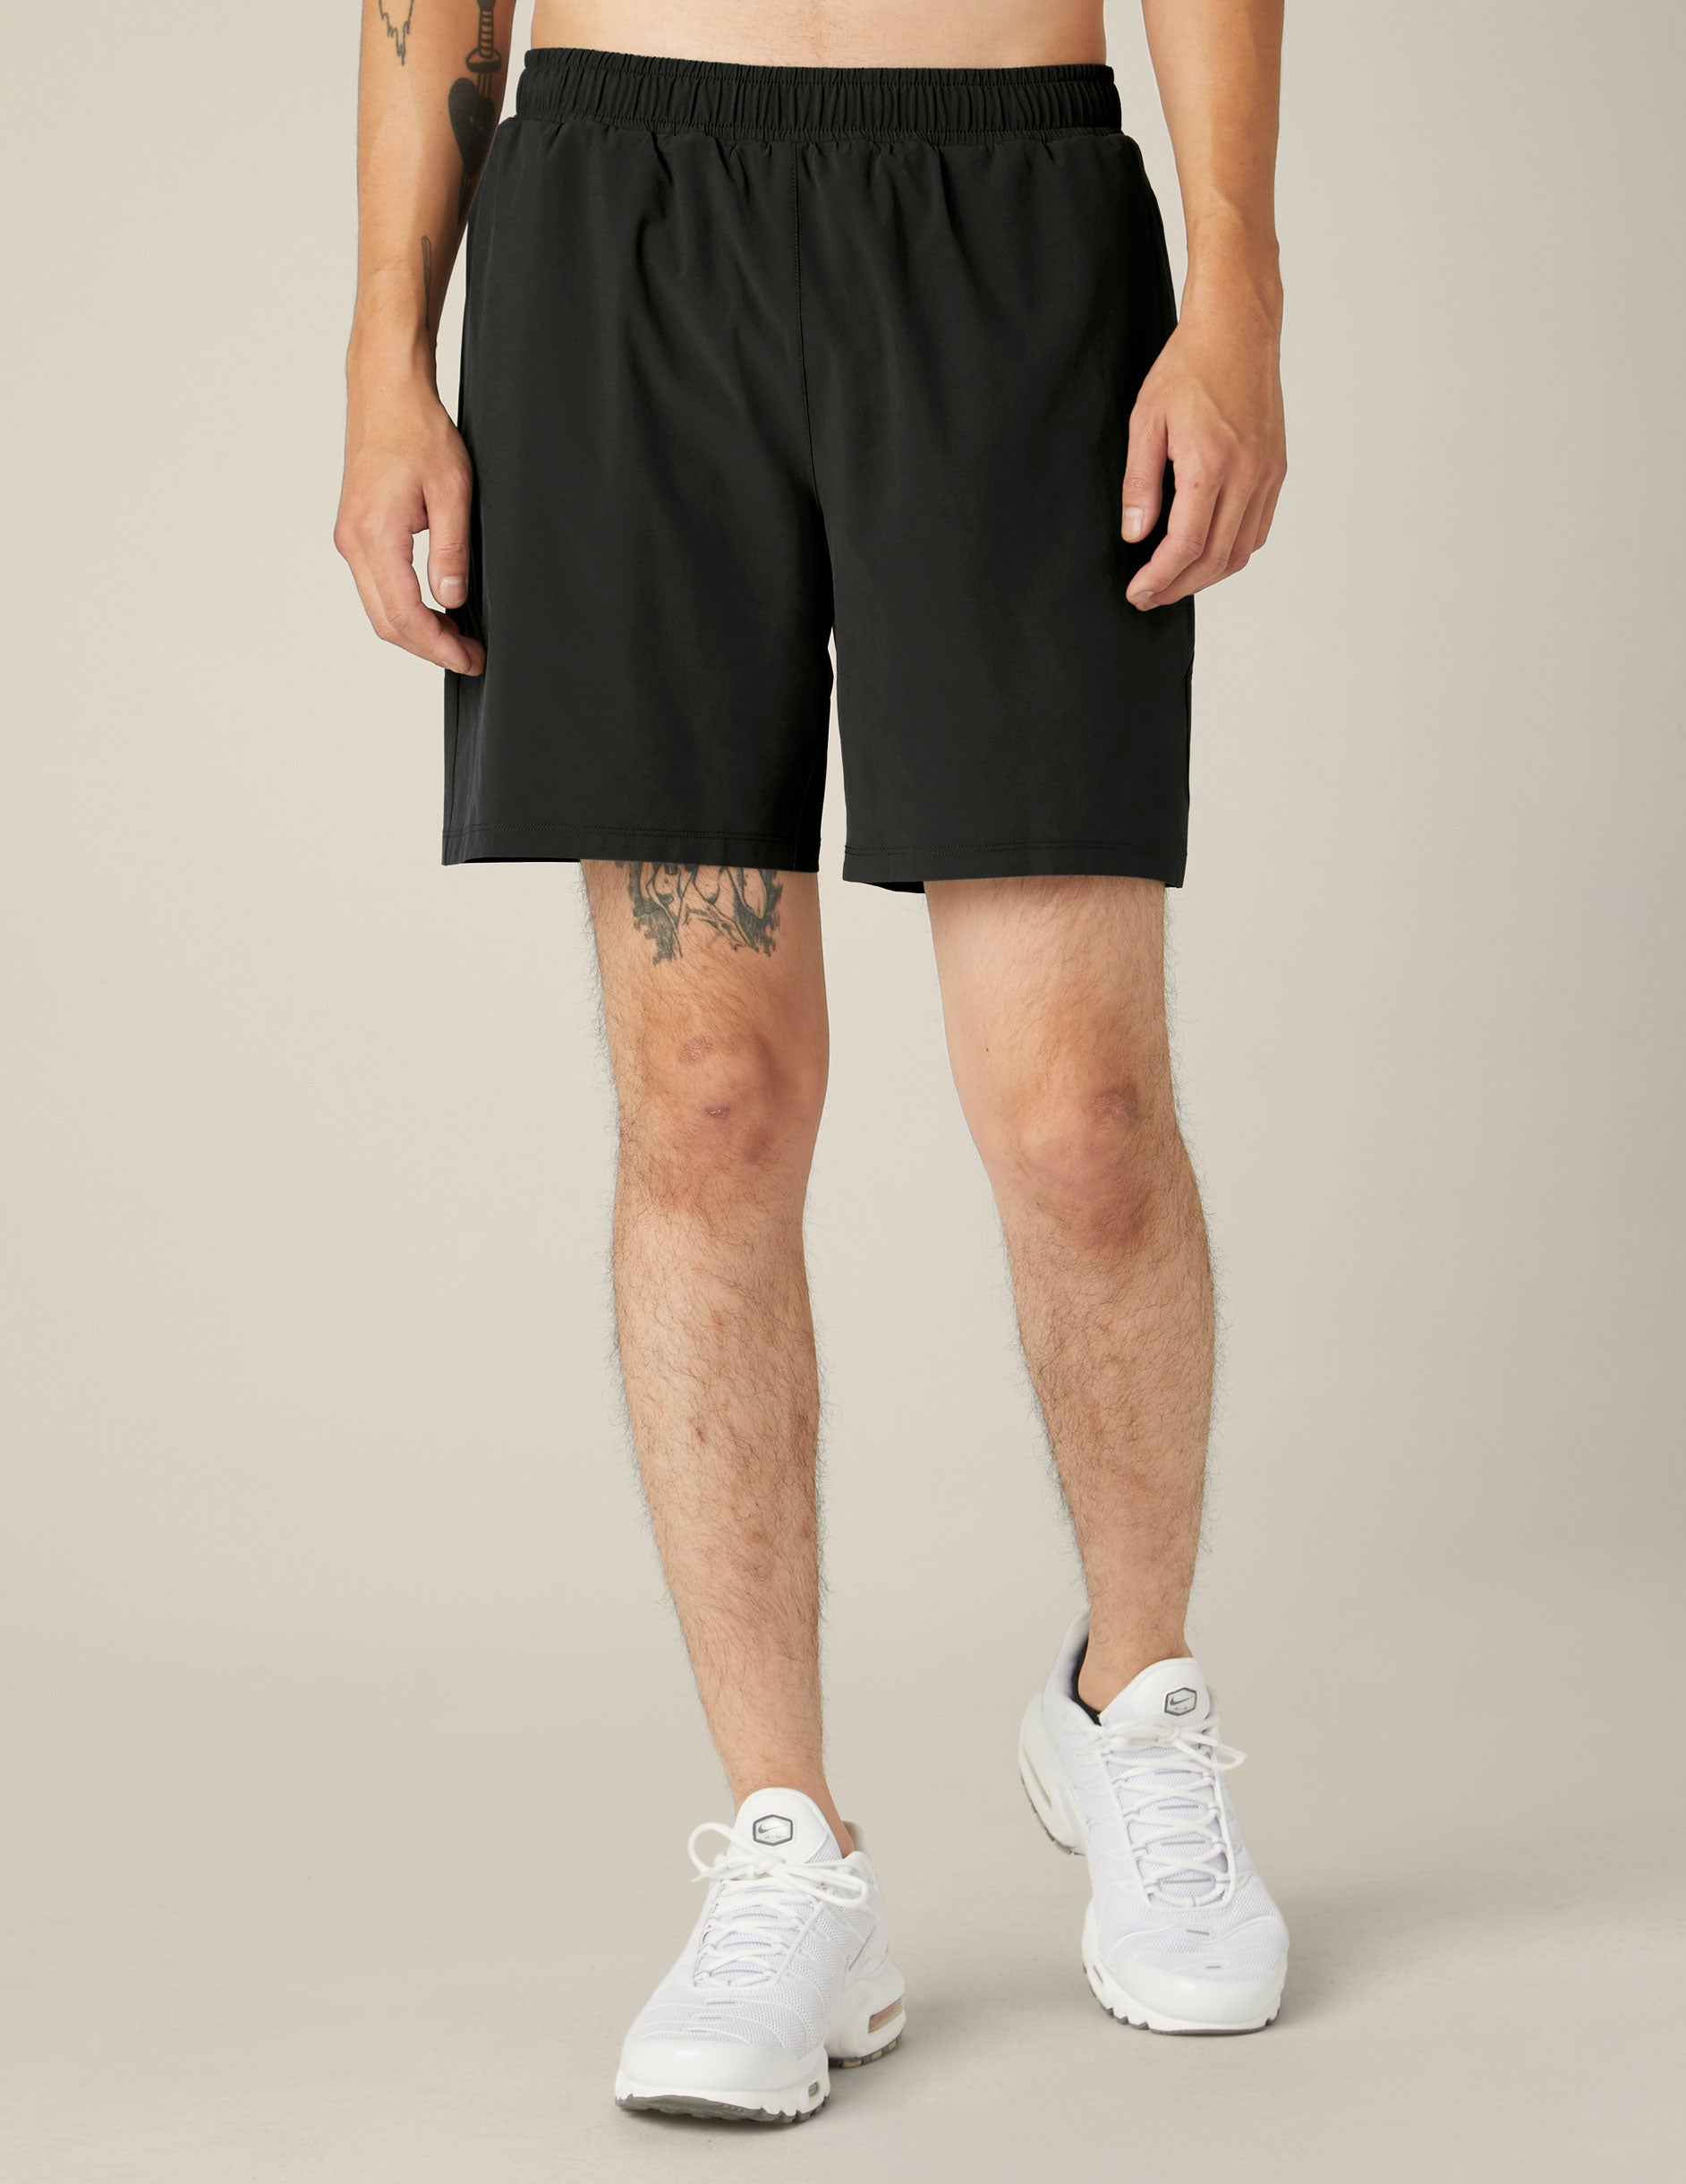 black men shorts